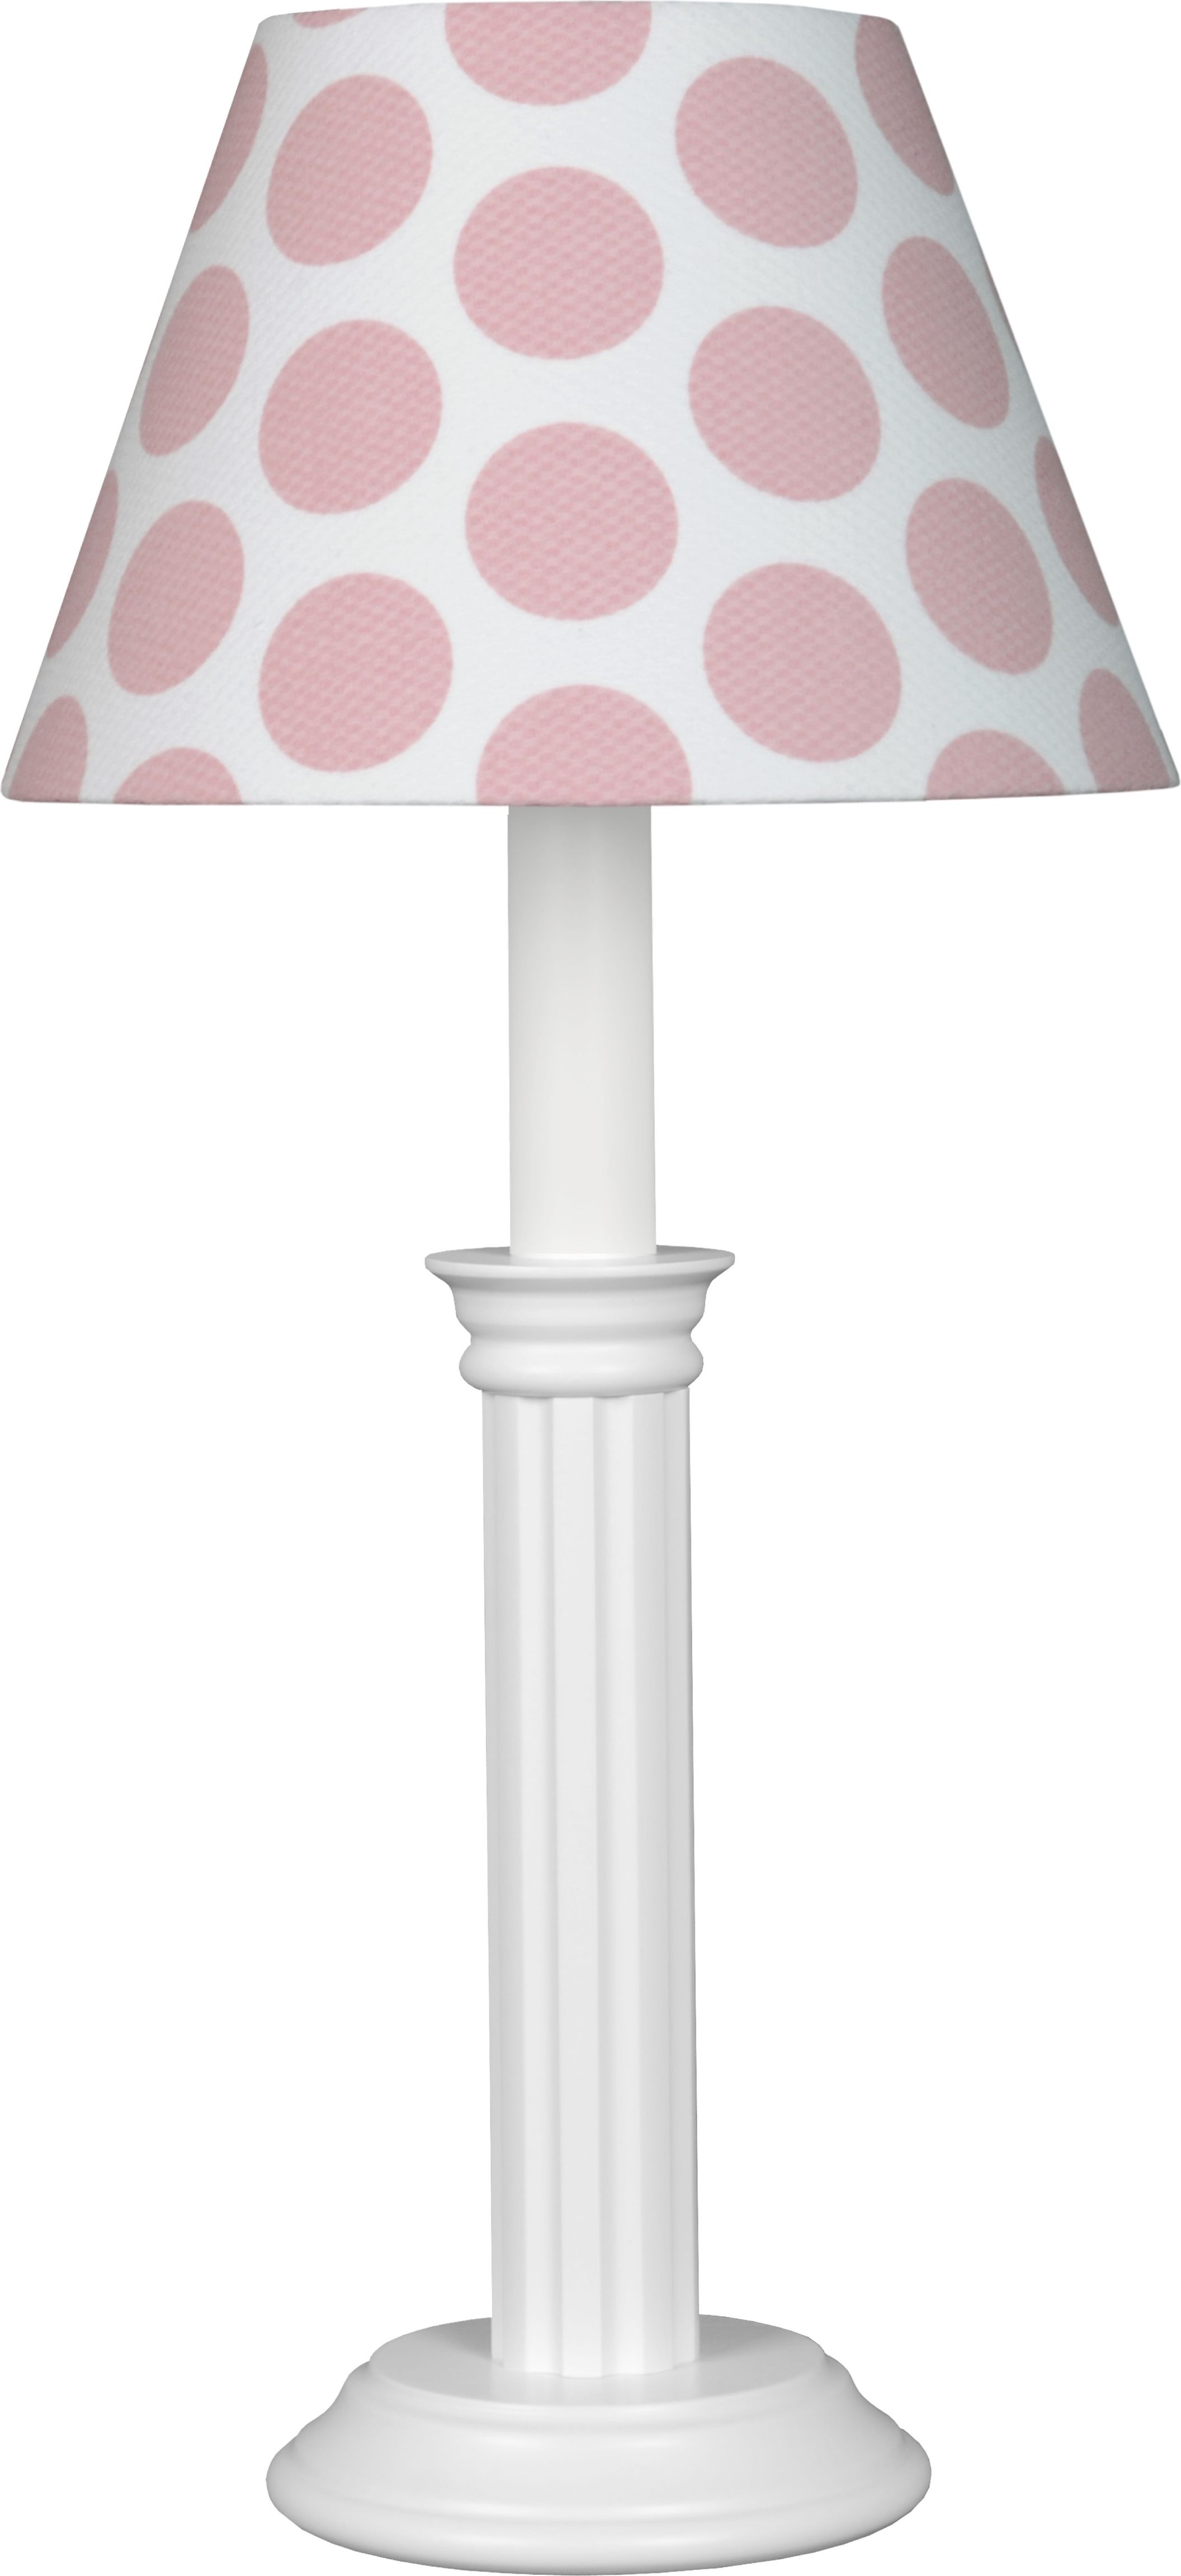 Waldi Leuchten Bubliny XL W81530.0 dětská stolní lampička - obrázek 1